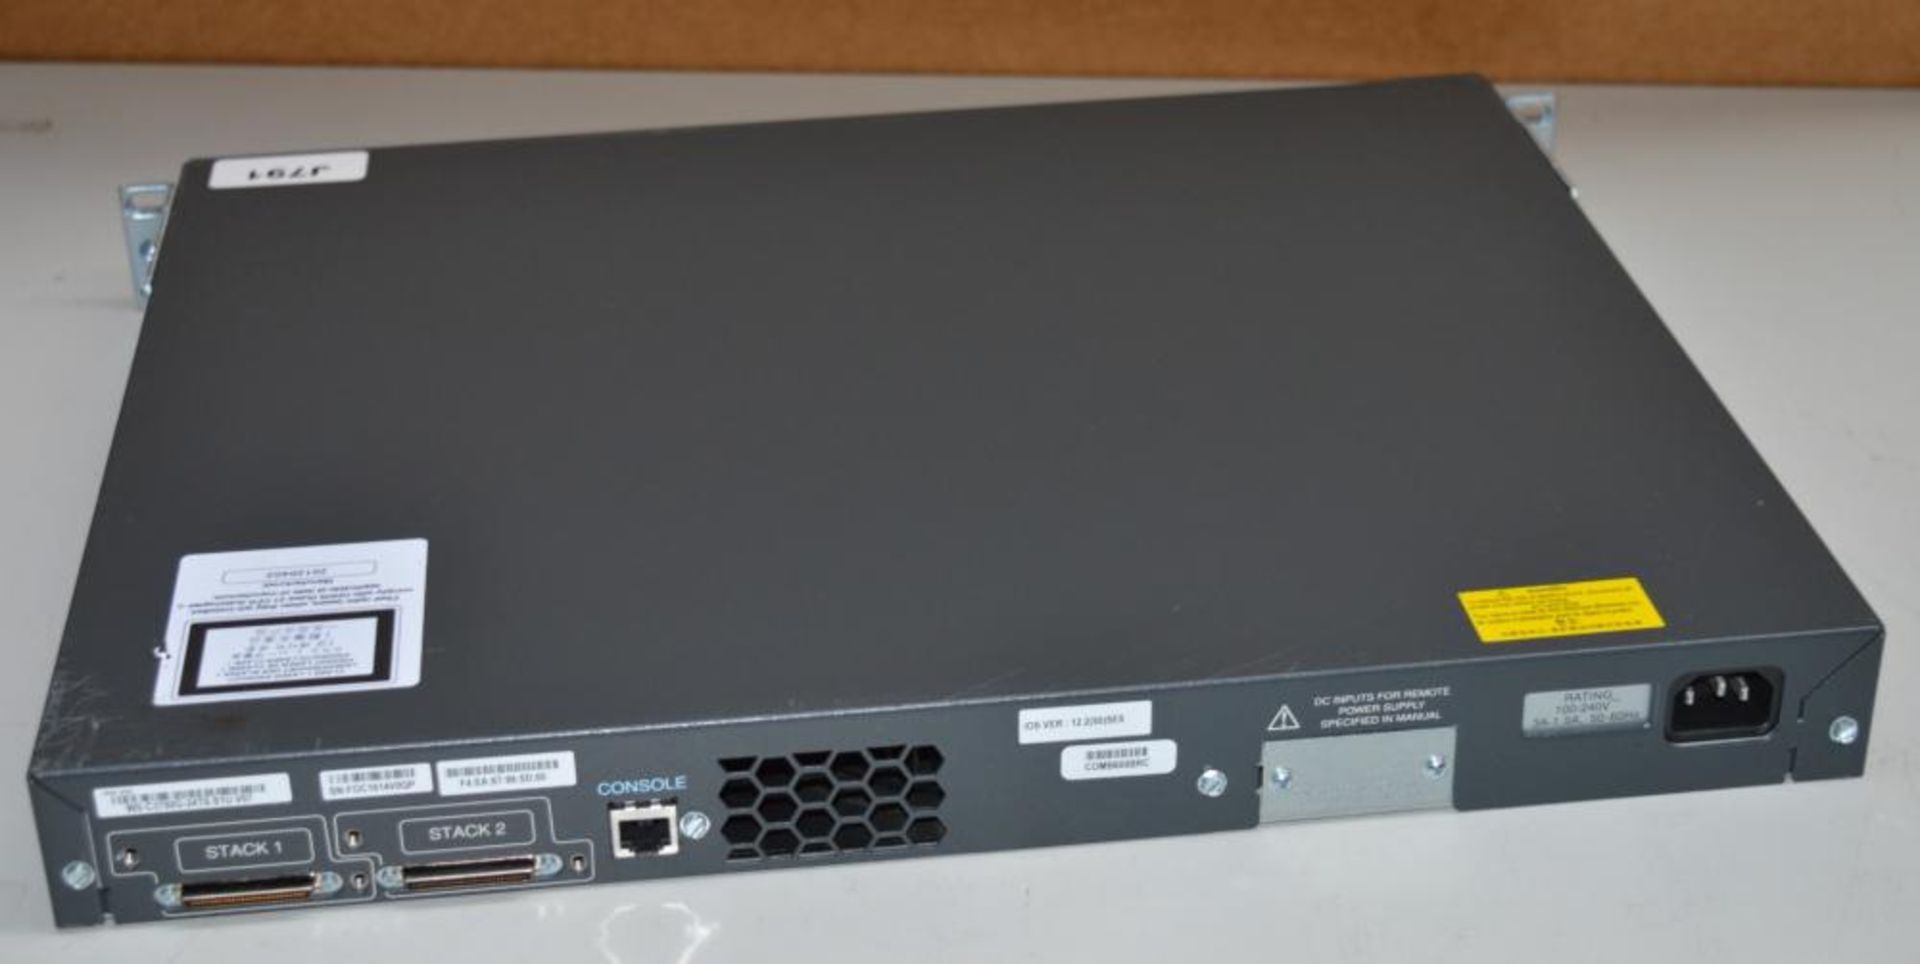 1 x Cisco Catalyst 3750G Series WS-C3750G-24TS Network Switch - CL285 - Ref J791 - Location: Altrinc - Bild 4 aus 5